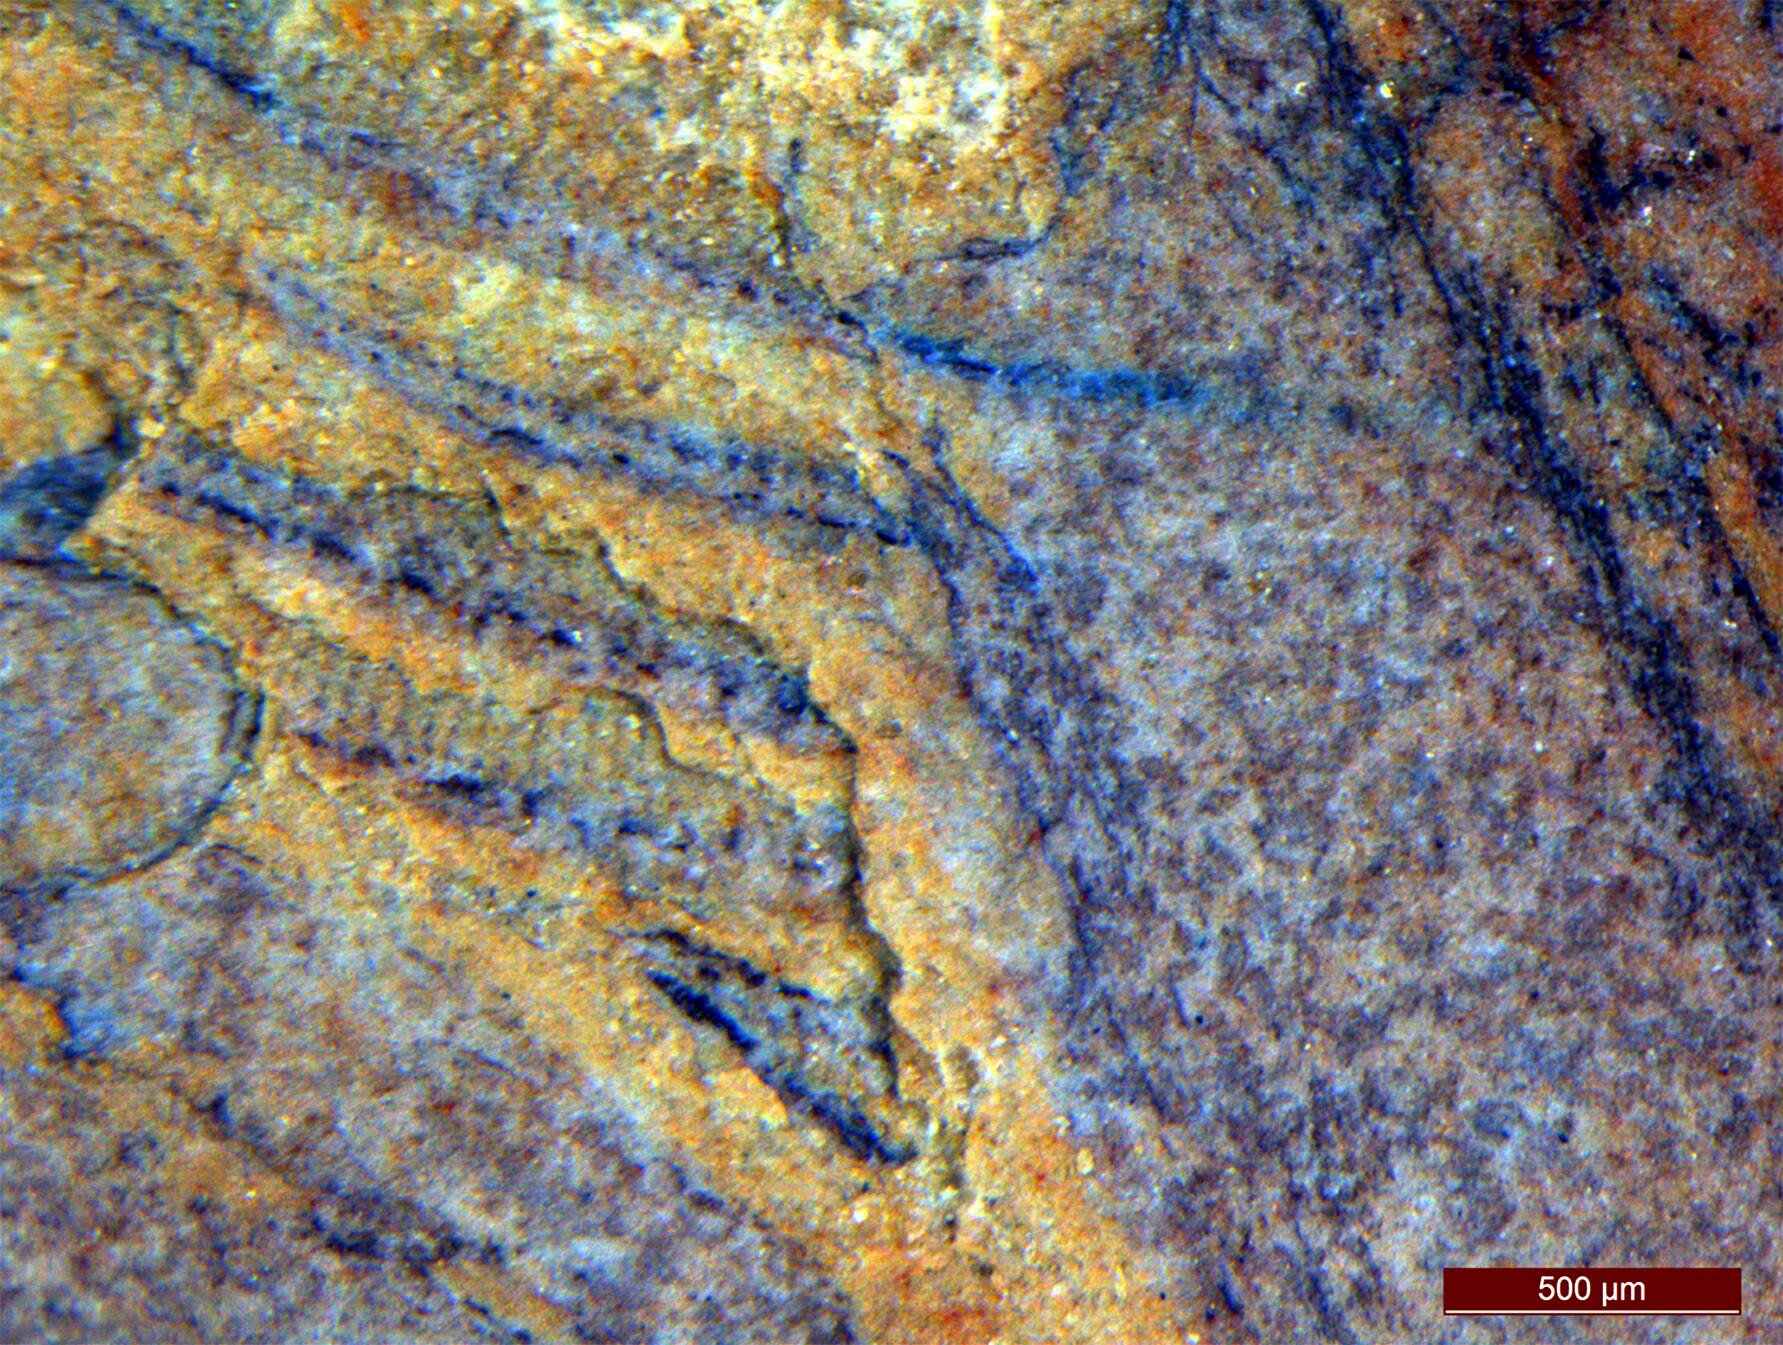 Et nærbillede af rækkerne af cilia på Daihua, som hjalp forfatterne med at placere fossilerne på kamgeléstammen.